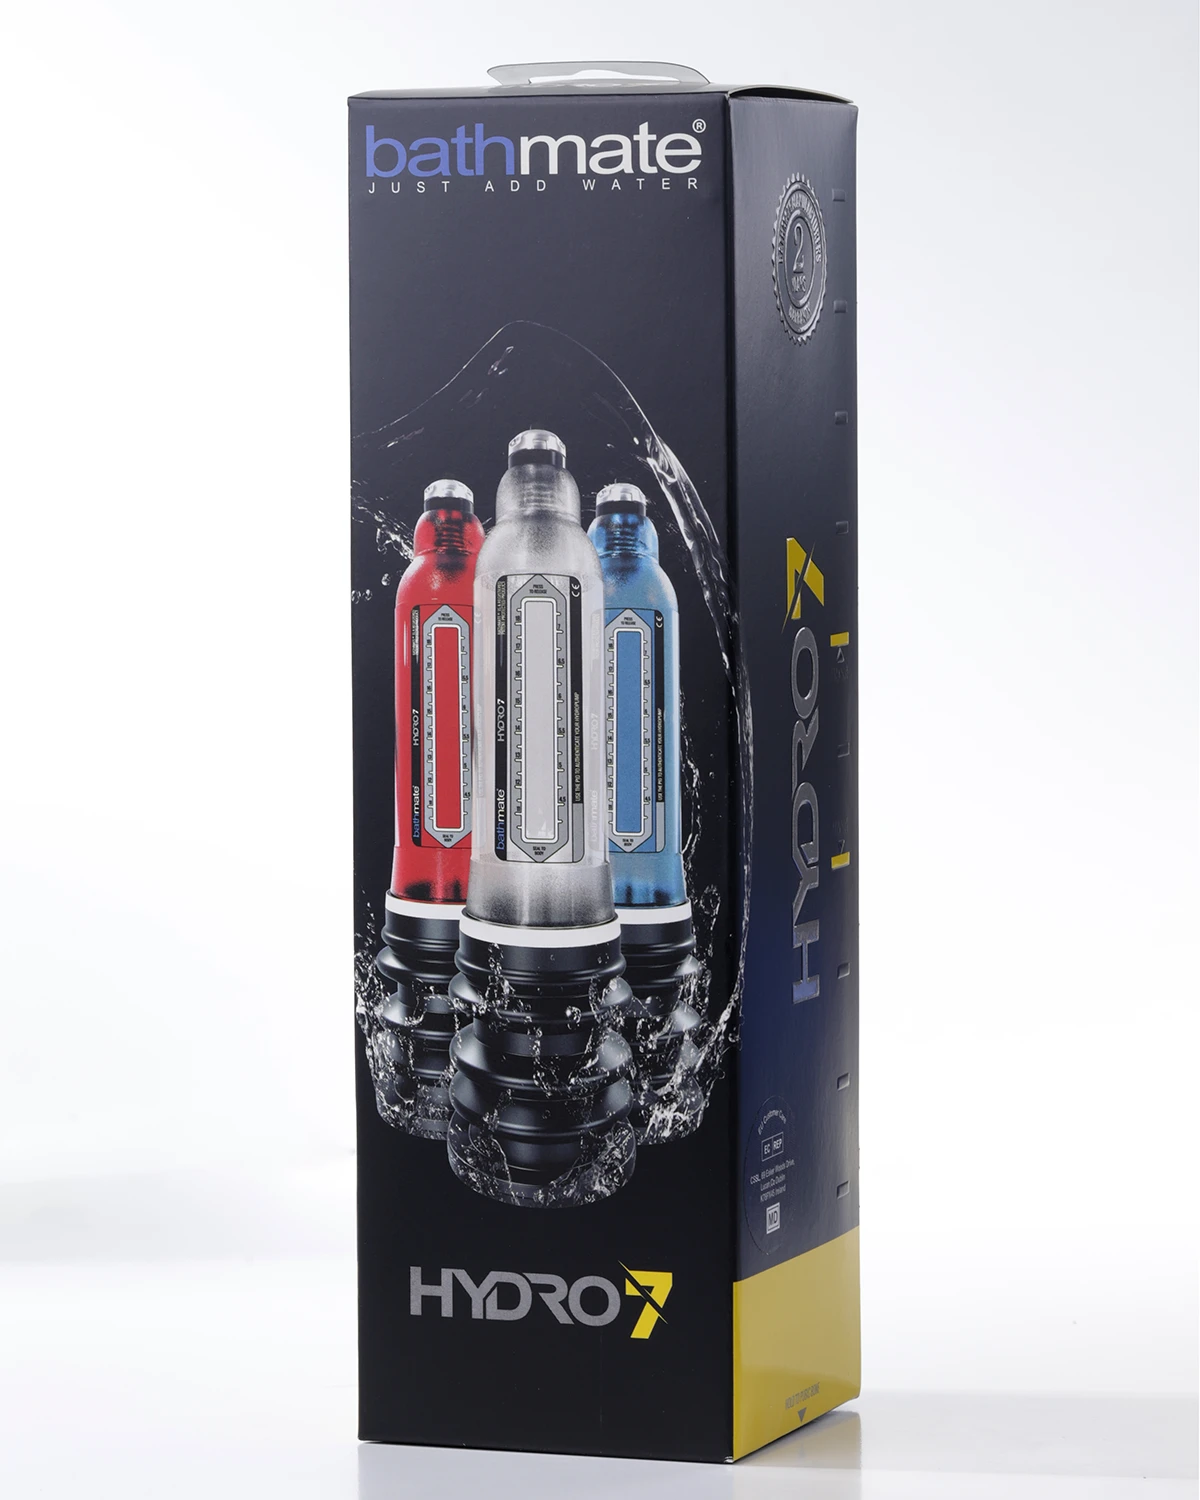 Bathmate Hydro 7 Crystal Clear